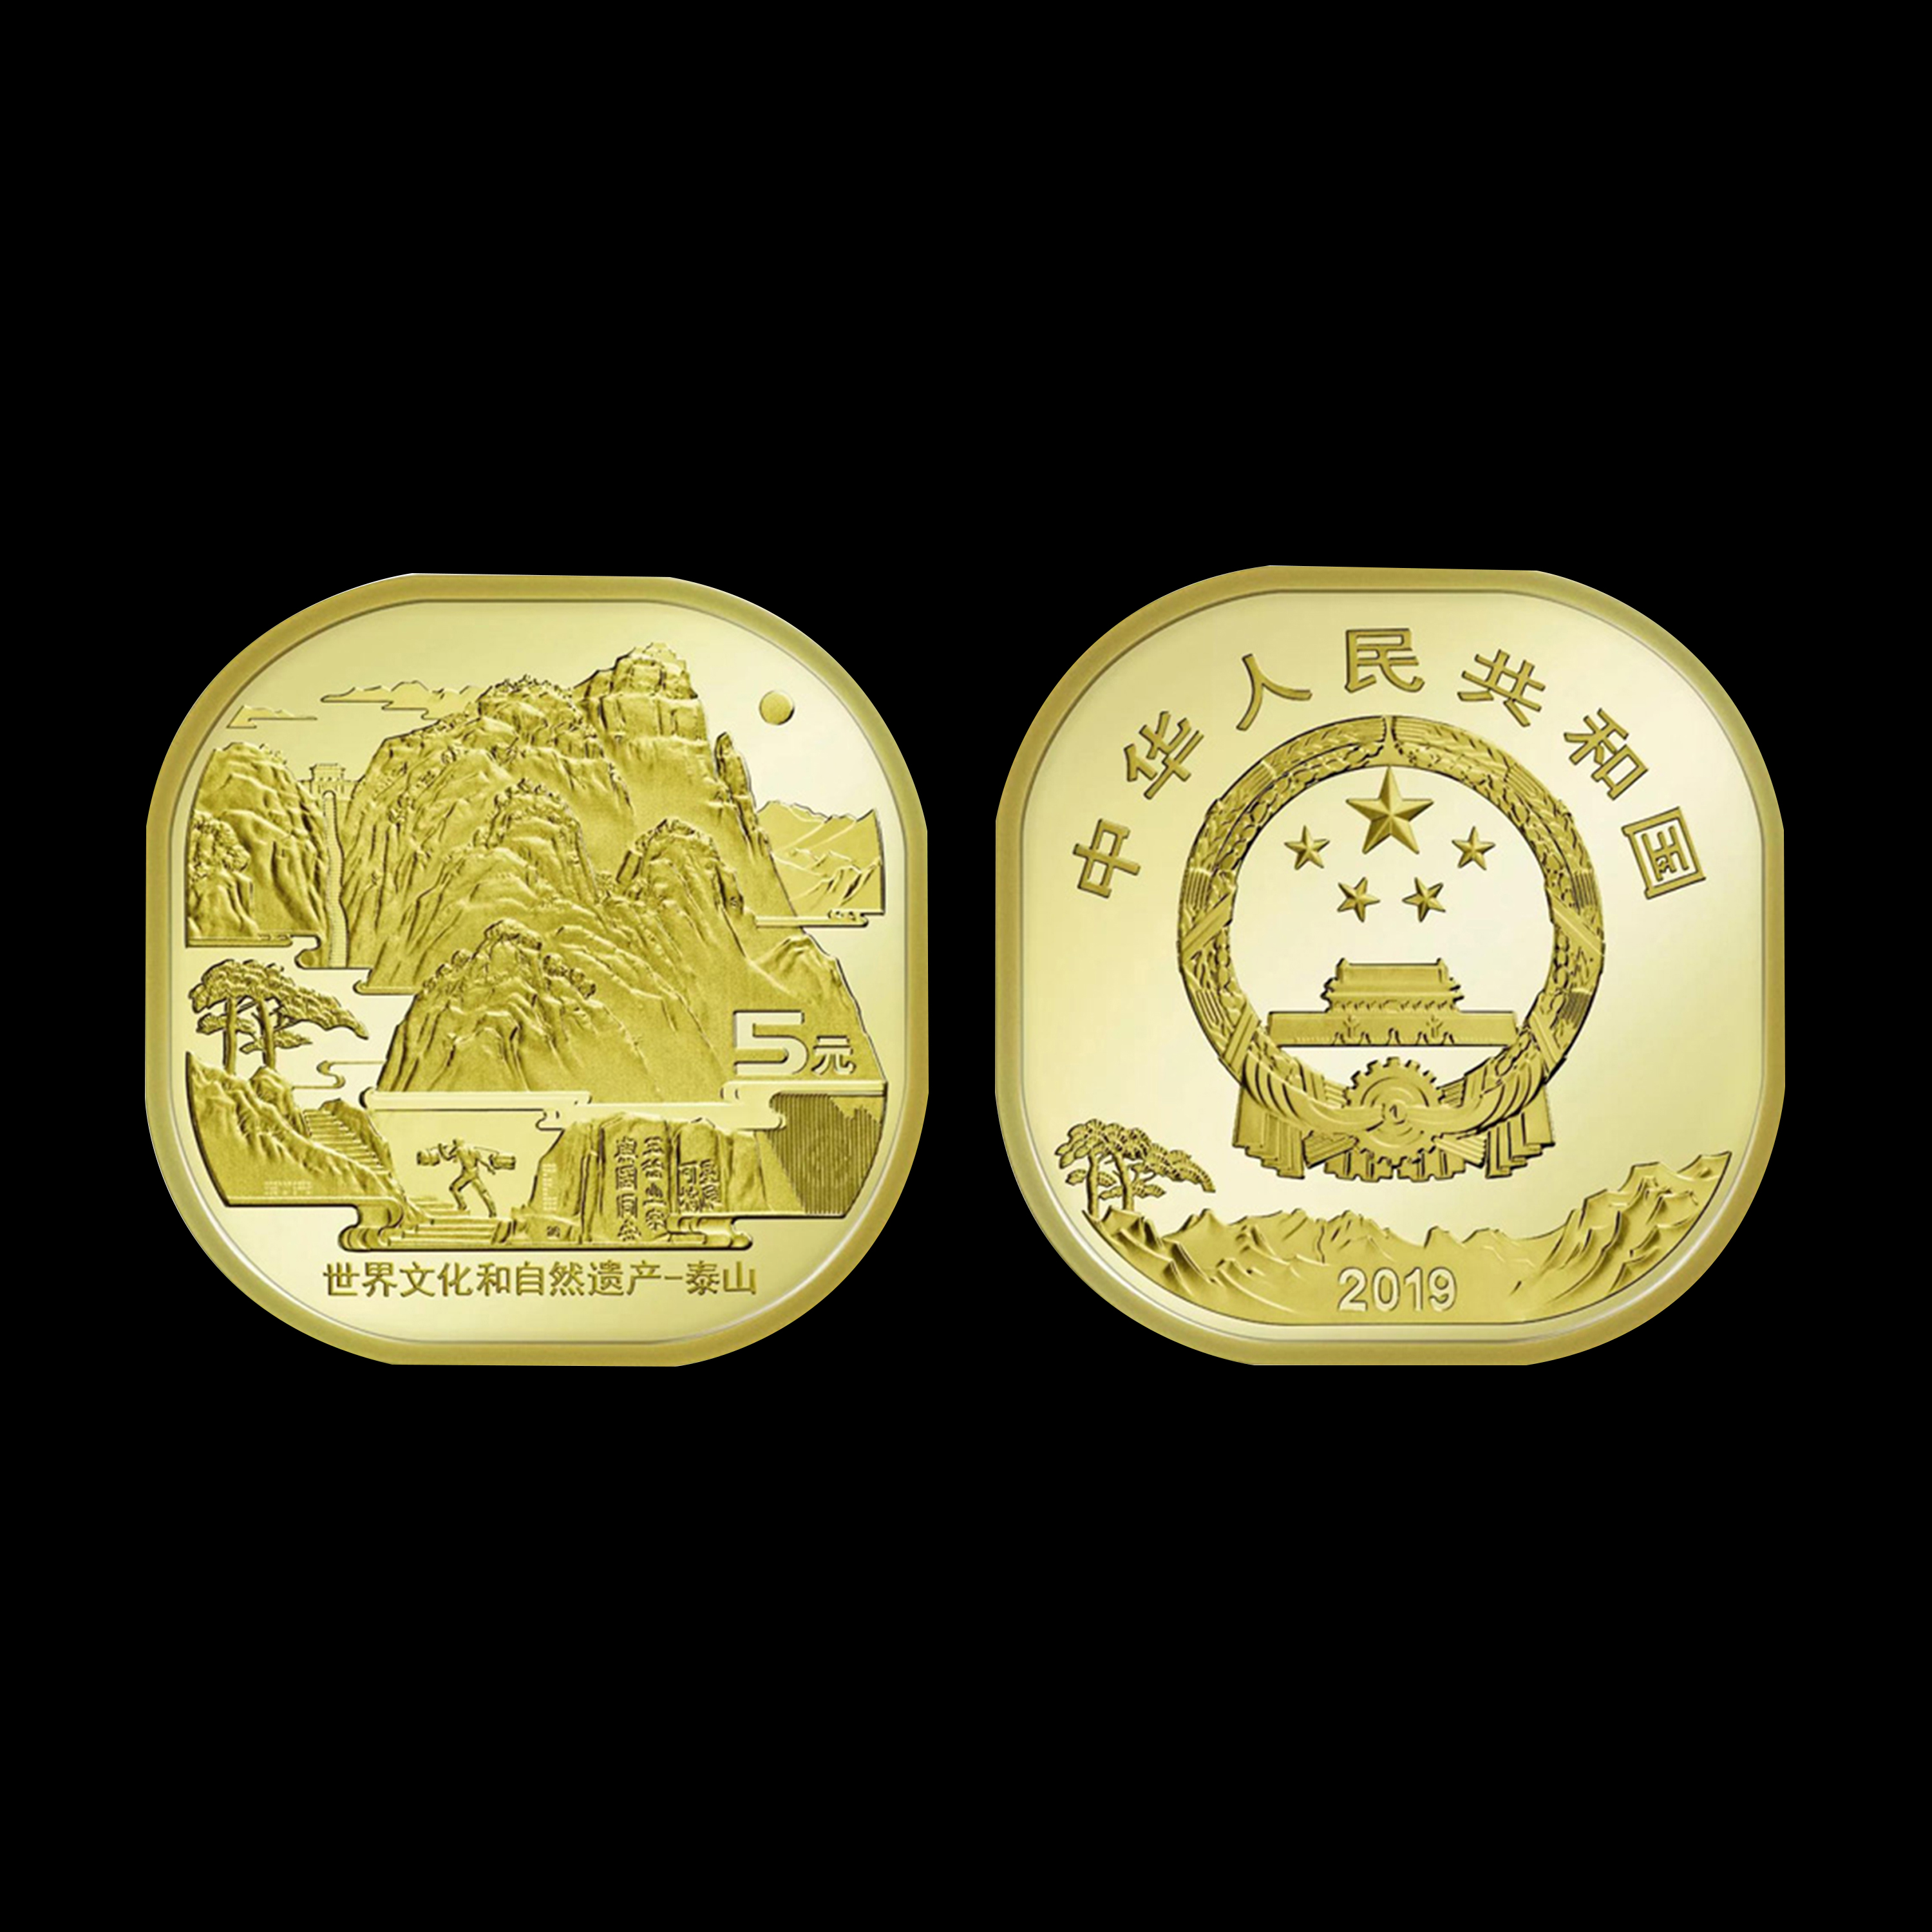 【泰山纪念币成卷】2019年首枚异形题材纪念币泰山币成卷共20枚h5